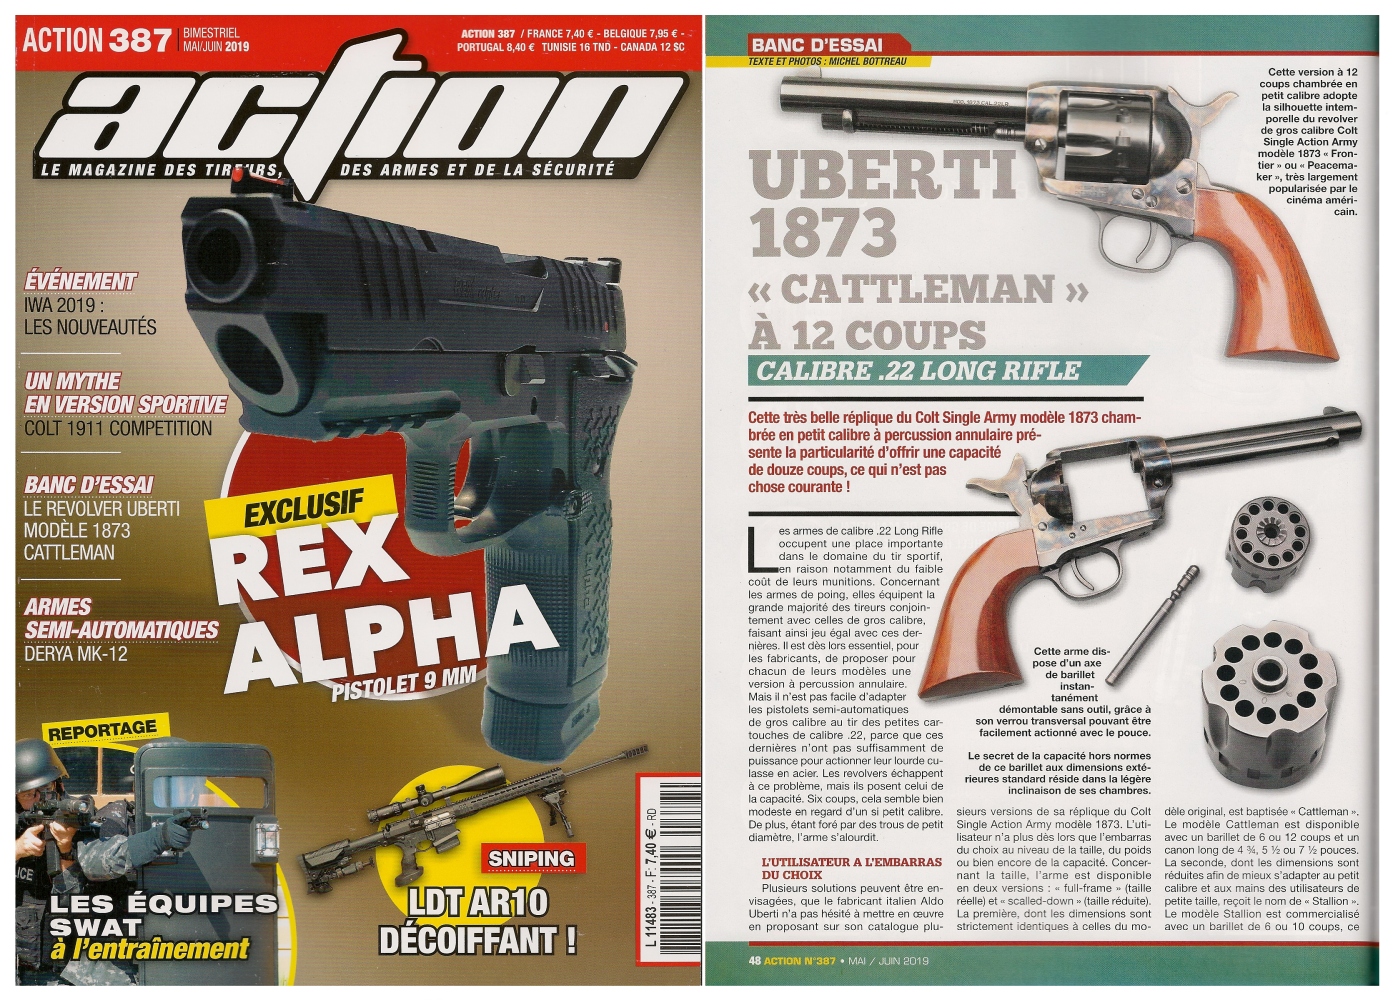 Le banc d’essai du revolver Uberti 1873 Cattleman a été publié sur 5 pages dans le magazine Action n°387 (mai/juin 2019). 